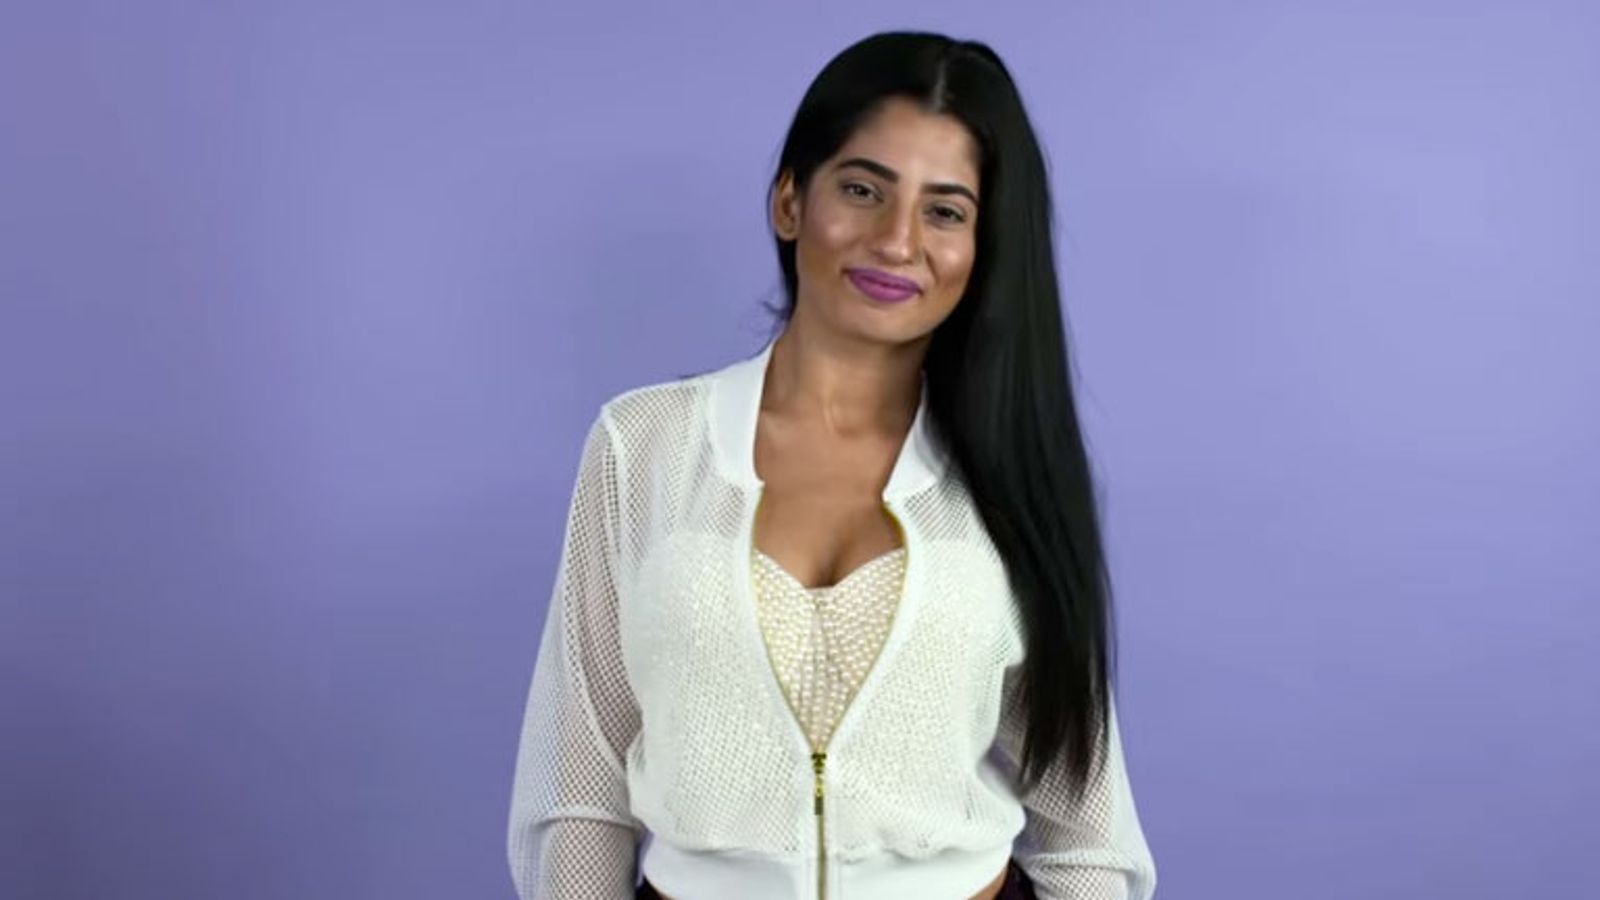 Nadia Ali First X Movie - Nadia Ali Rejects Trump Scene, Takes Break From XXX | AVN